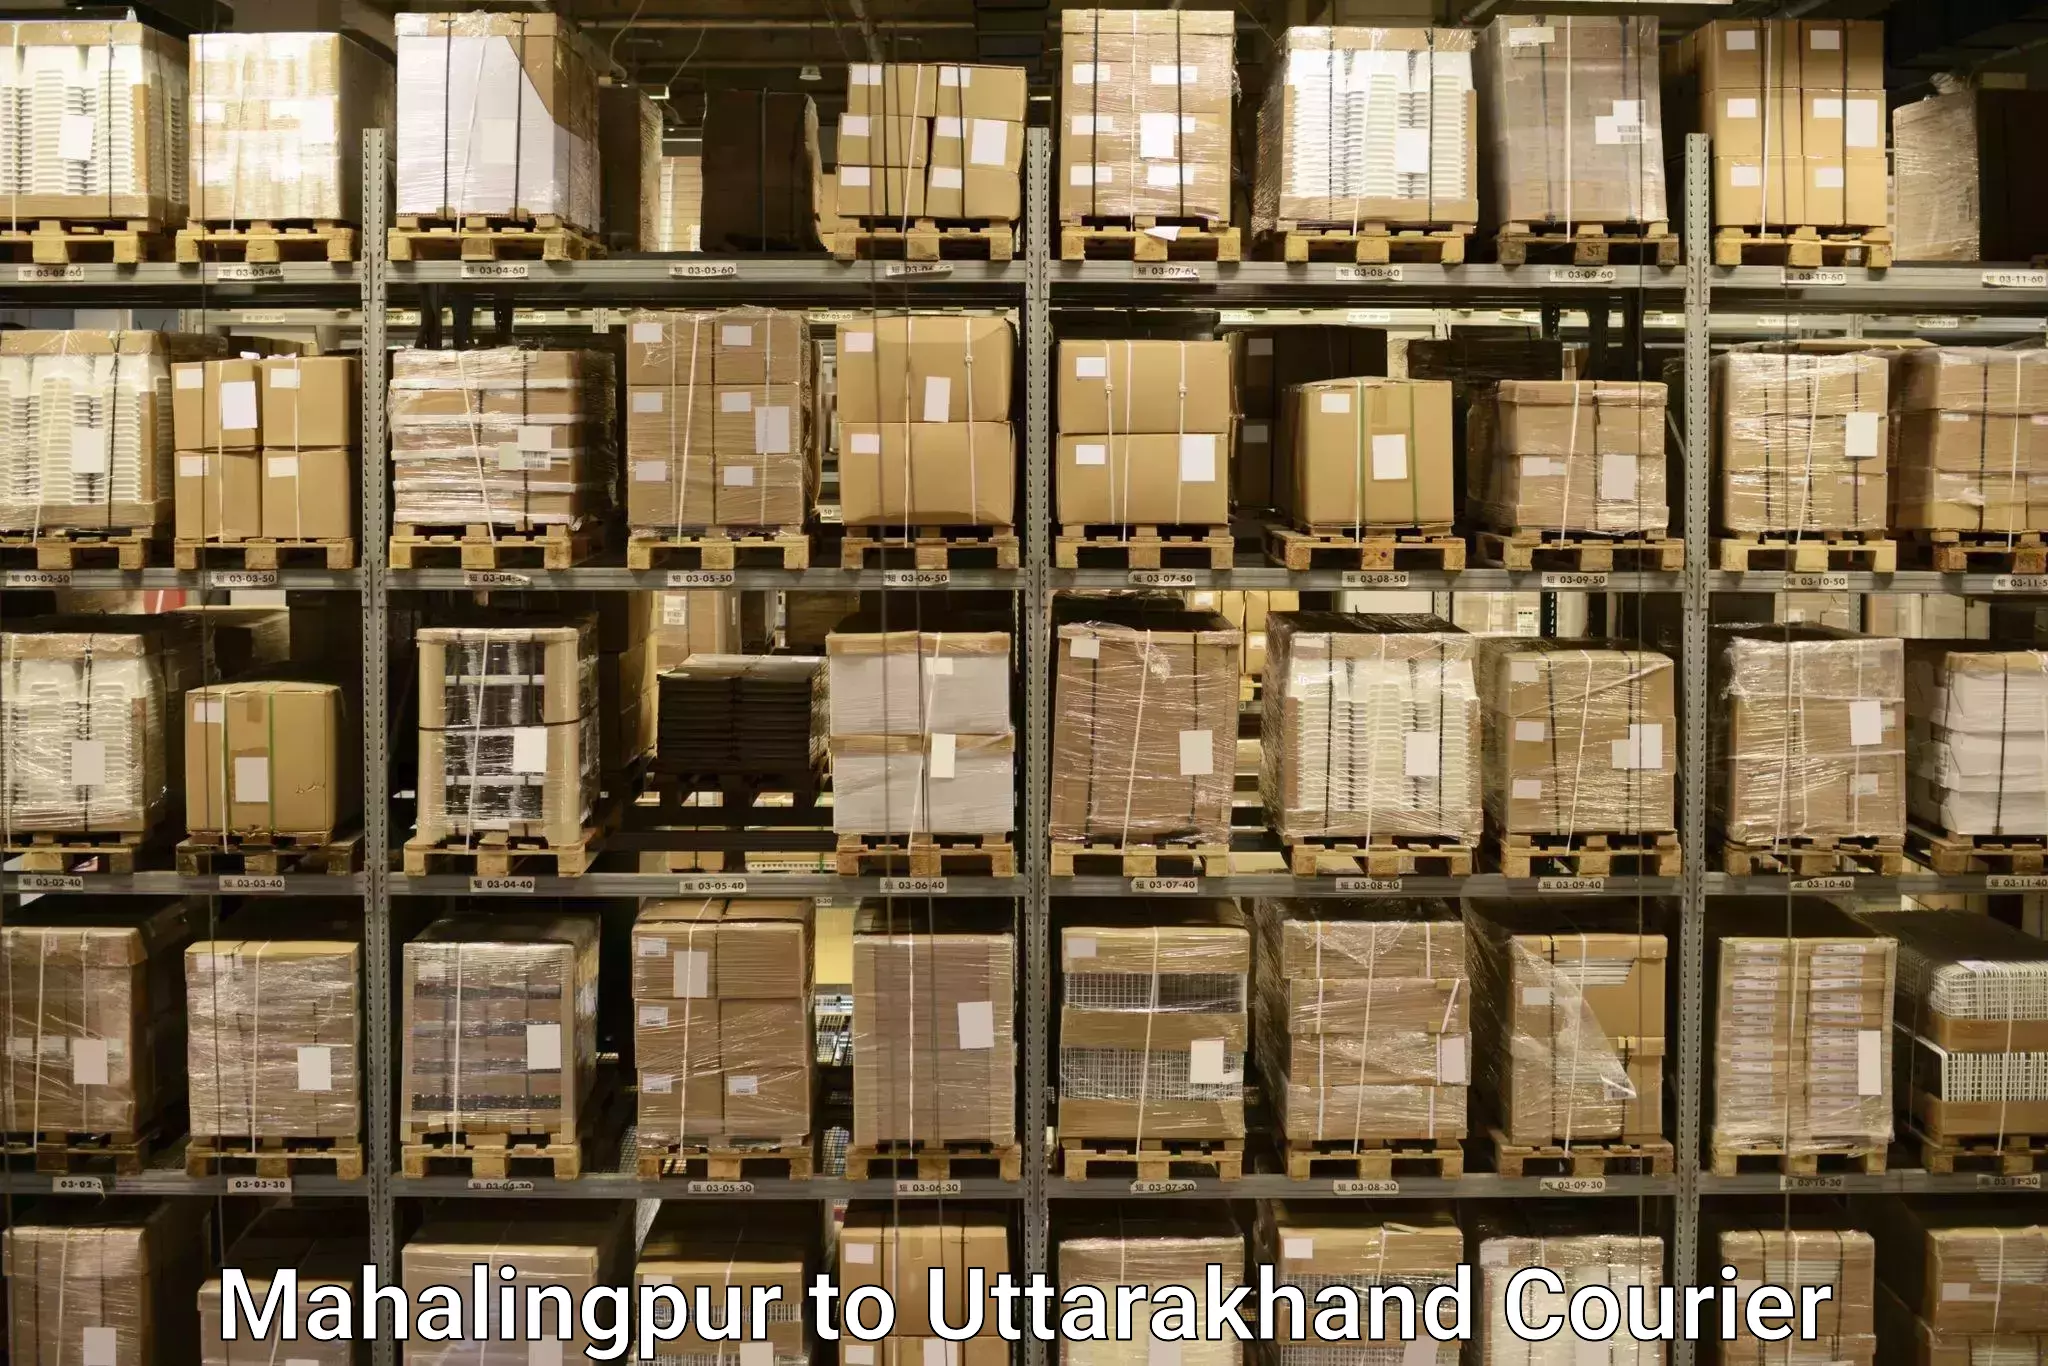 Baggage shipping experience Mahalingpur to Rishikesh